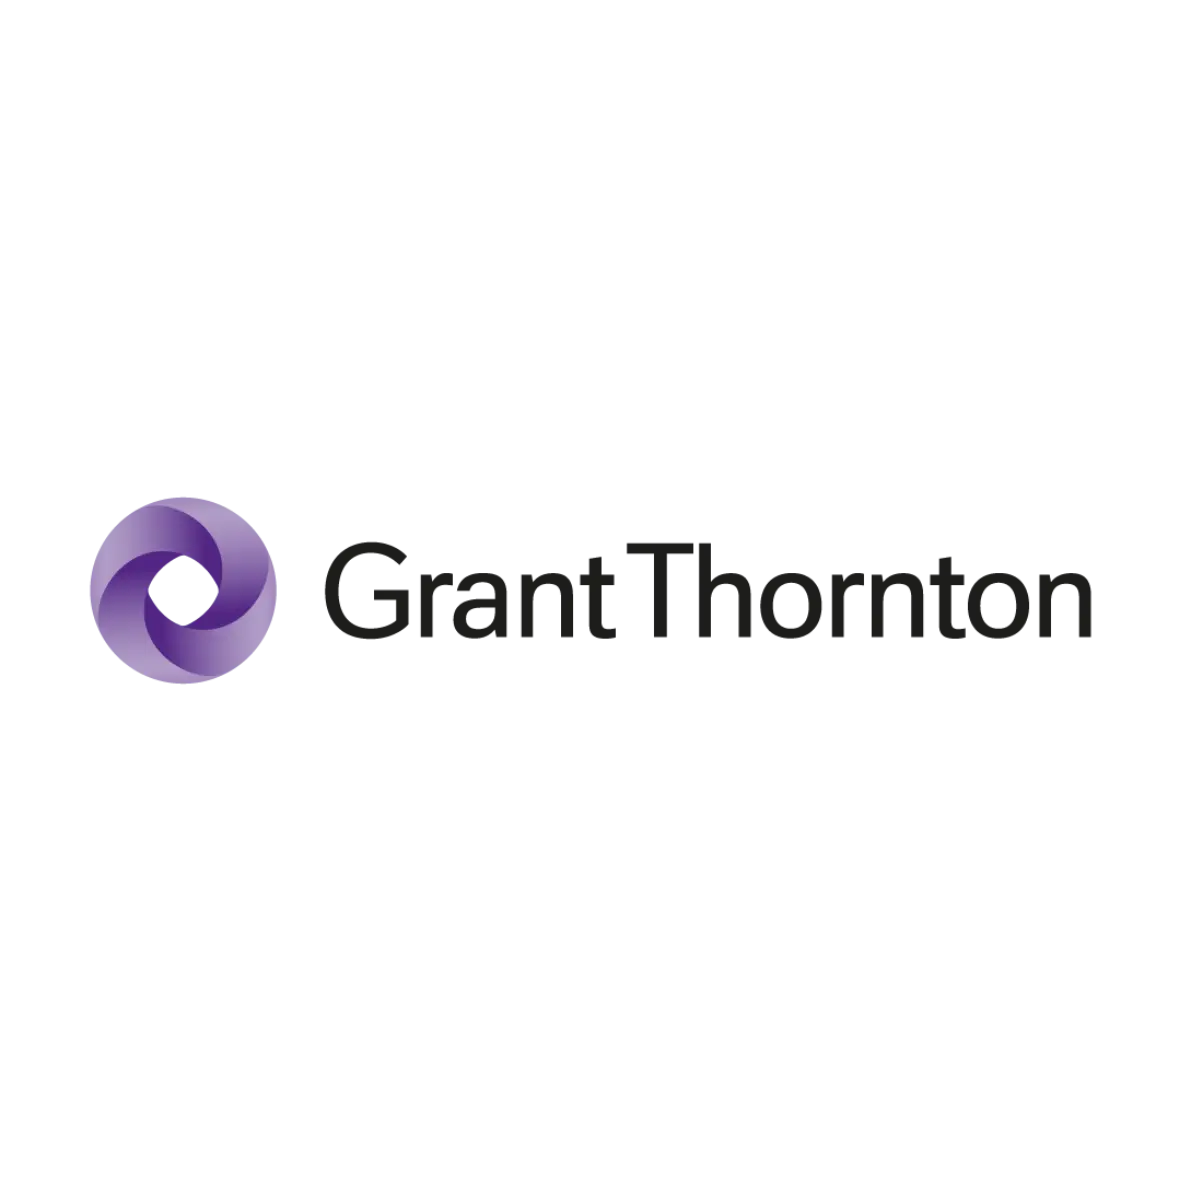 firma de auditoria grant thornton - Qué significa Grant Thornton